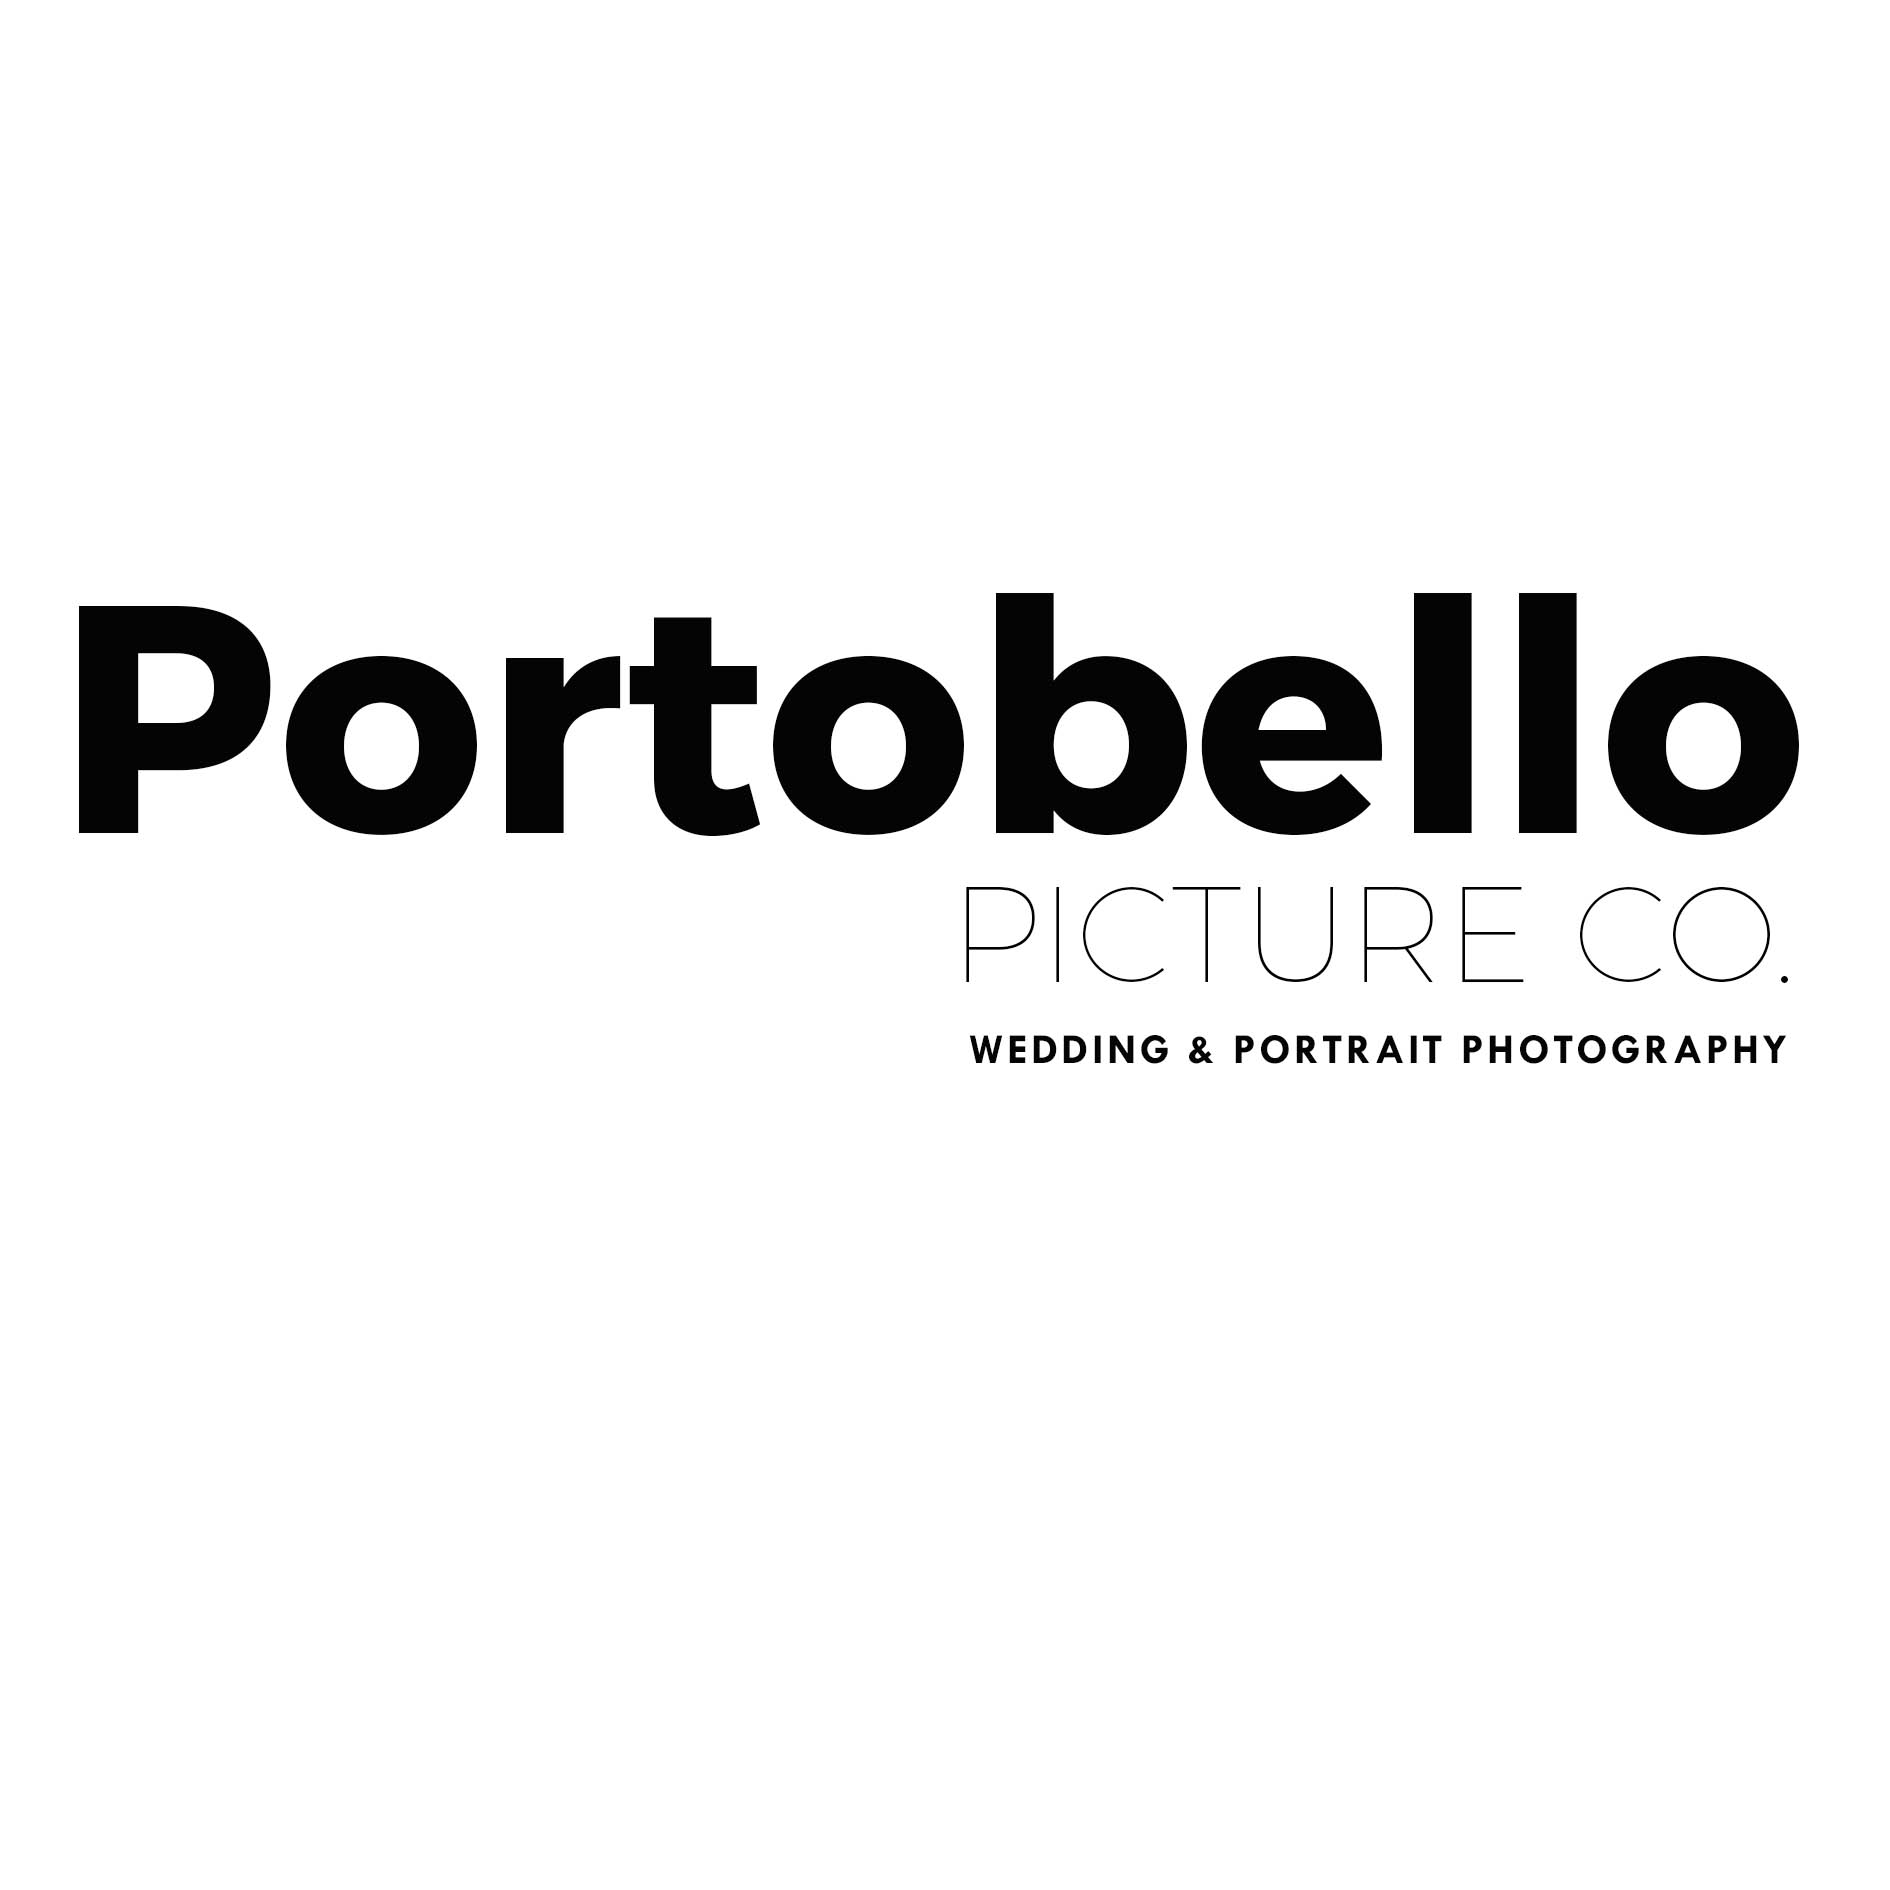 Portobello Picture Co. logo